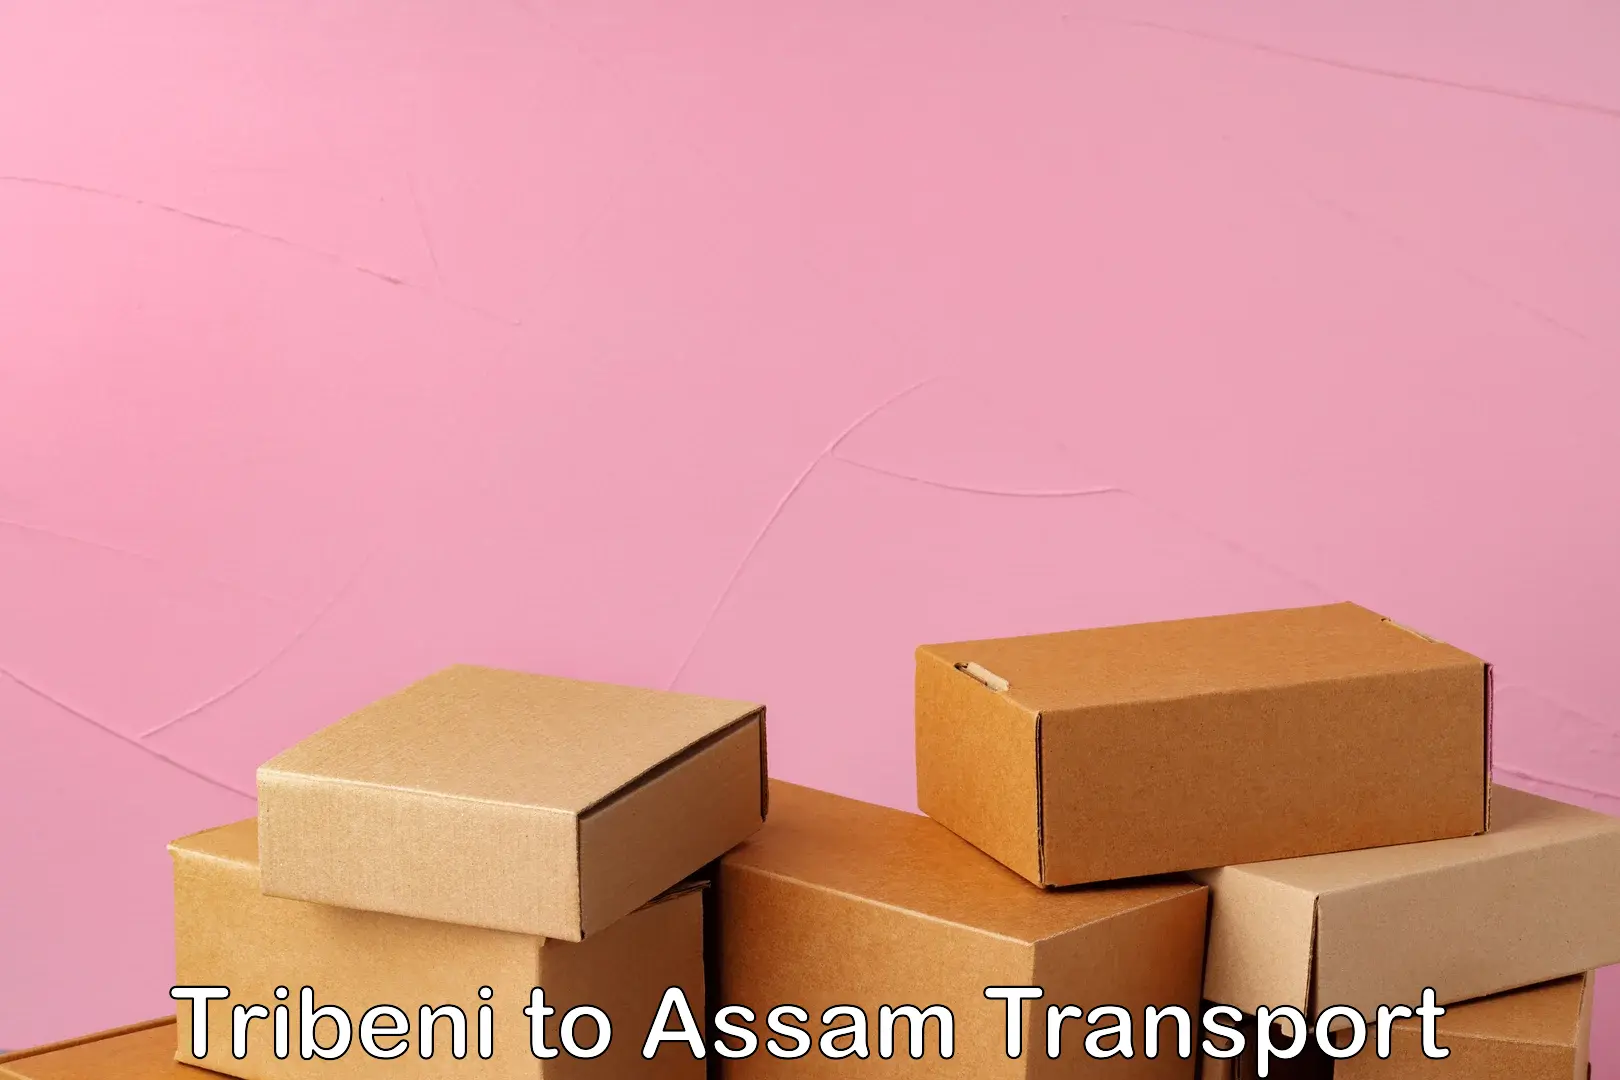 Nearby transport service Tribeni to Assam